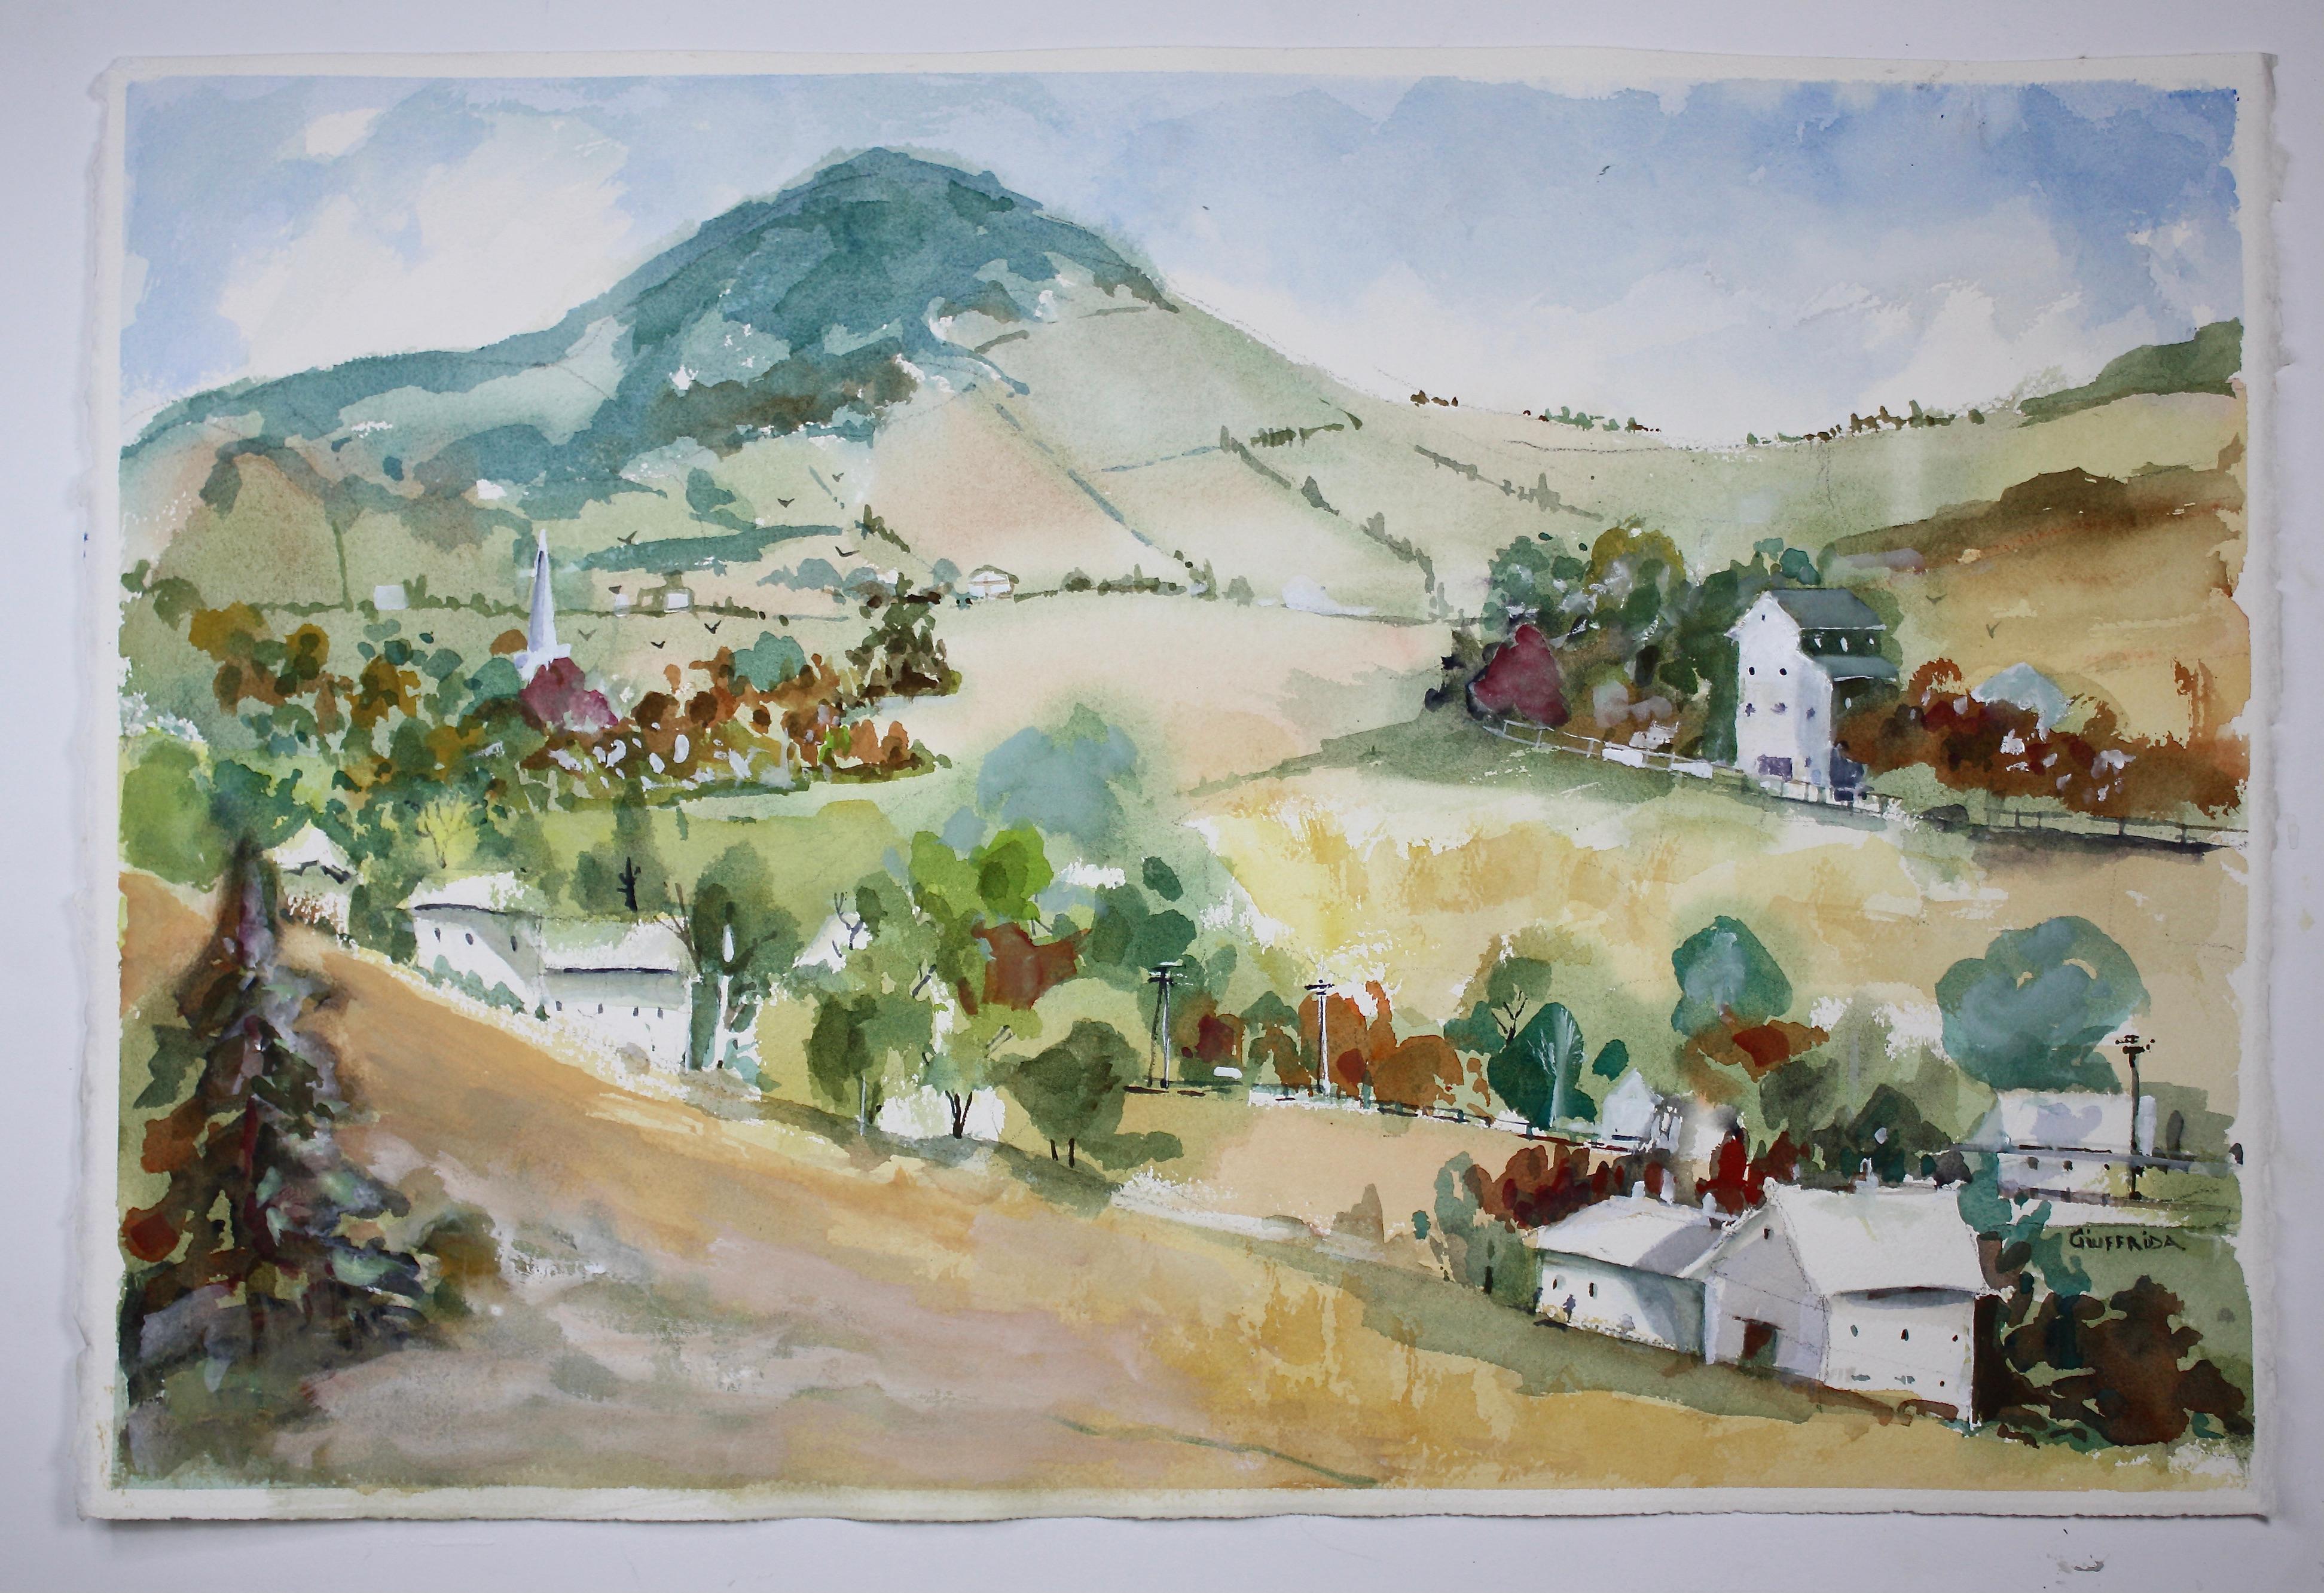 <p>Commentaires de l'artiste<br>Un charmant village de montagne en France s'étend sur de magnifiques collines ondulantes dans l'œuvre impressionniste de l'artiste Joe Giuffrida. Les maisons qui parsèment la communauté vallonnée offrent une vue